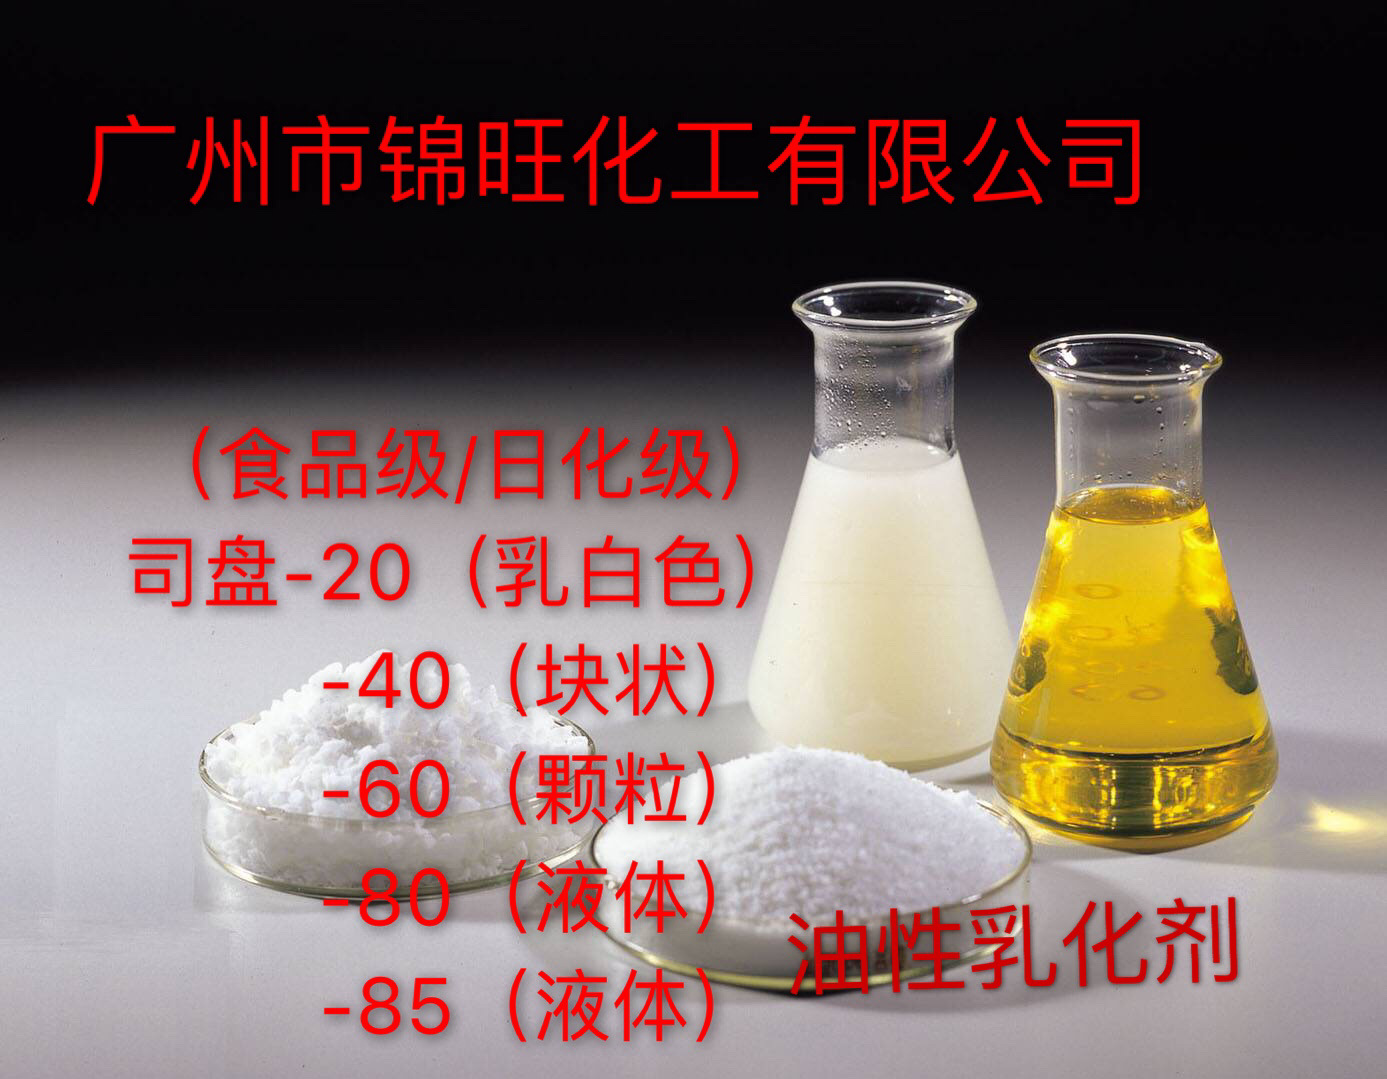 司盘S-20(食品/日化级) 油性乳化剂 (可小量定购)|ms